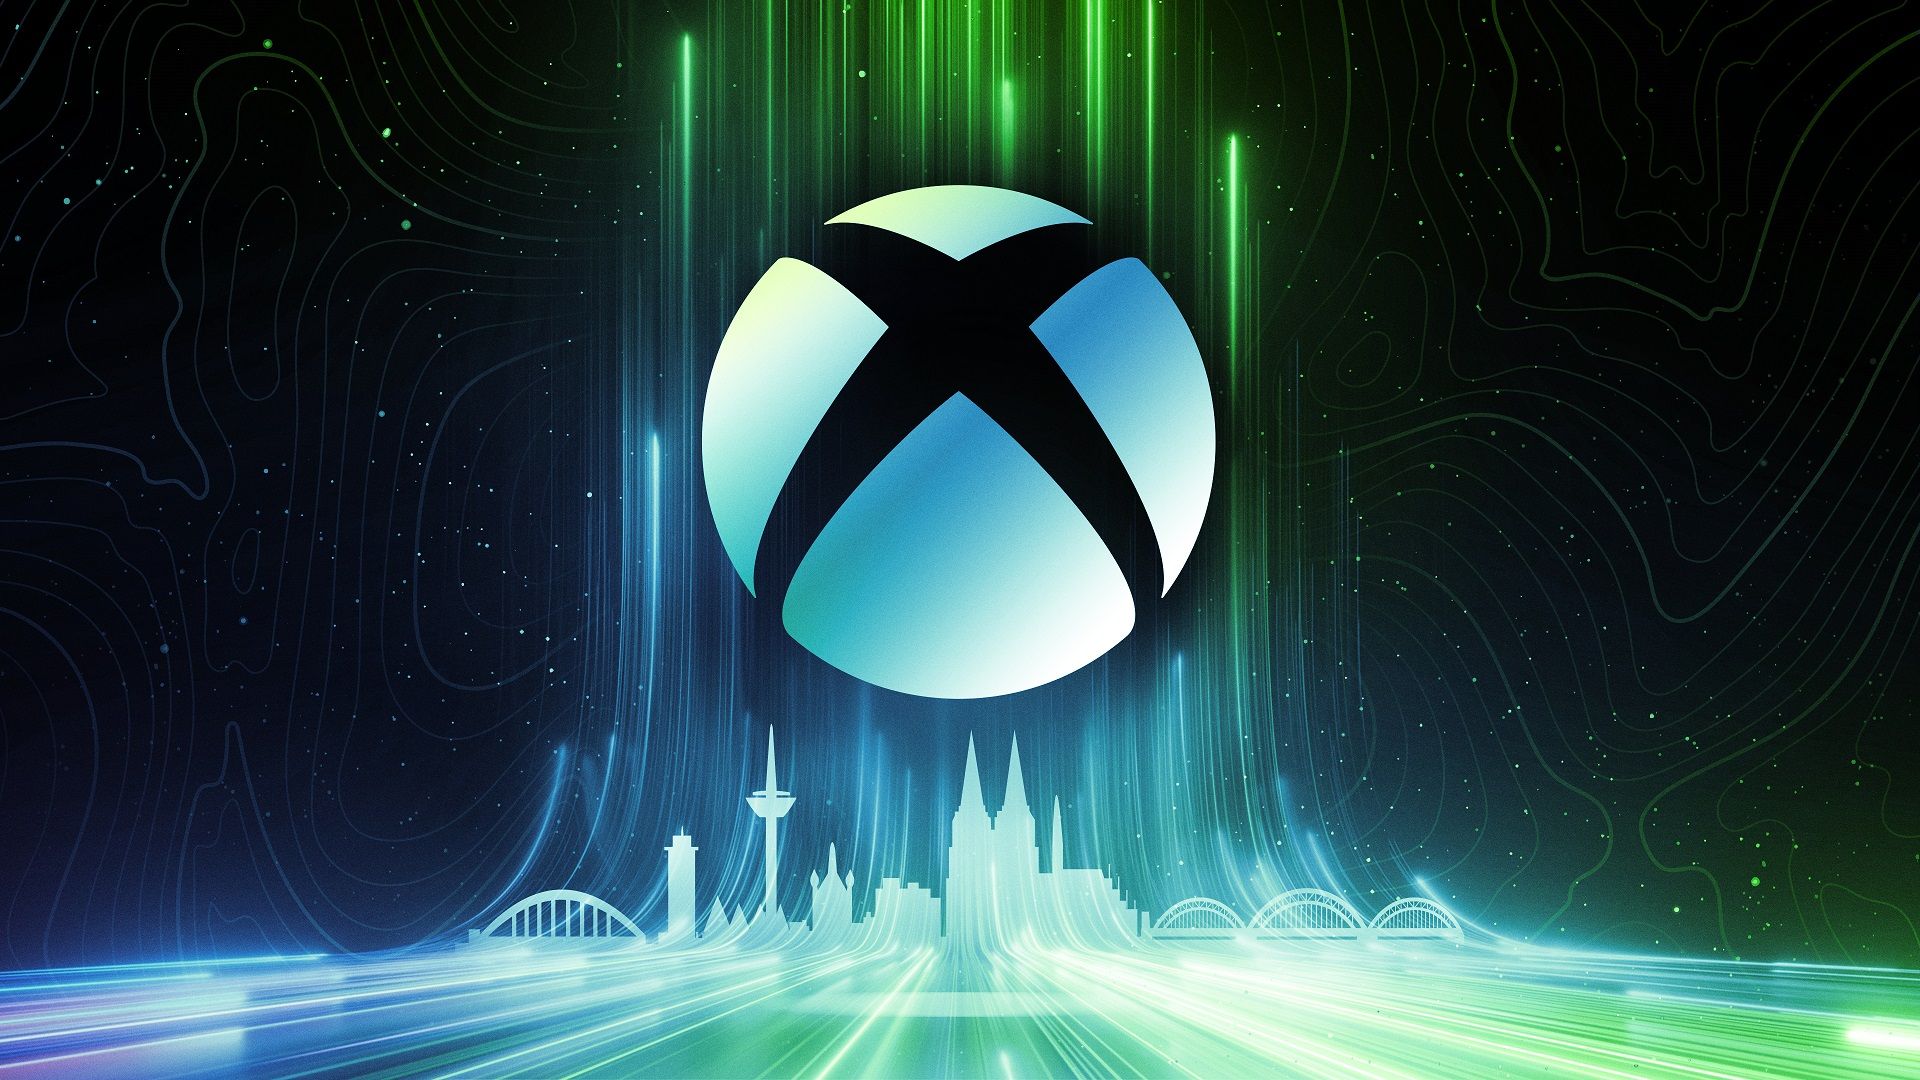 #FTC-Dokumente enthüllen Pläne für Xbox ohne Laufwerk, neuen Controller und Next-Gen-Konsole